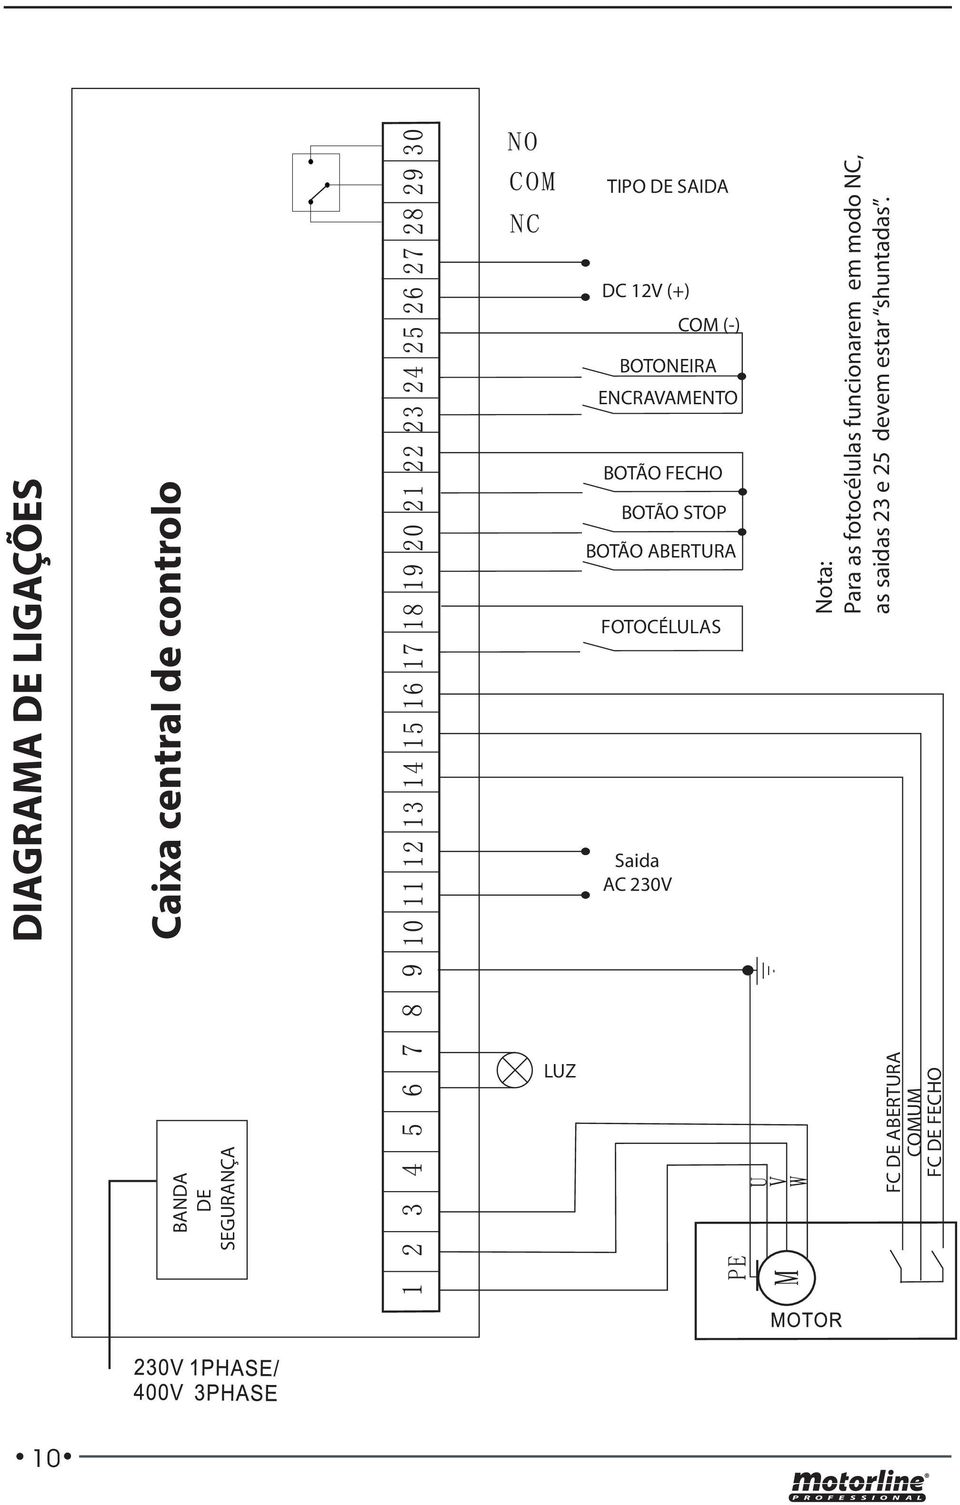 AC 230V COM (-) Nota: Para as fotocélulas funcionarem em modo NC, as saidas 23